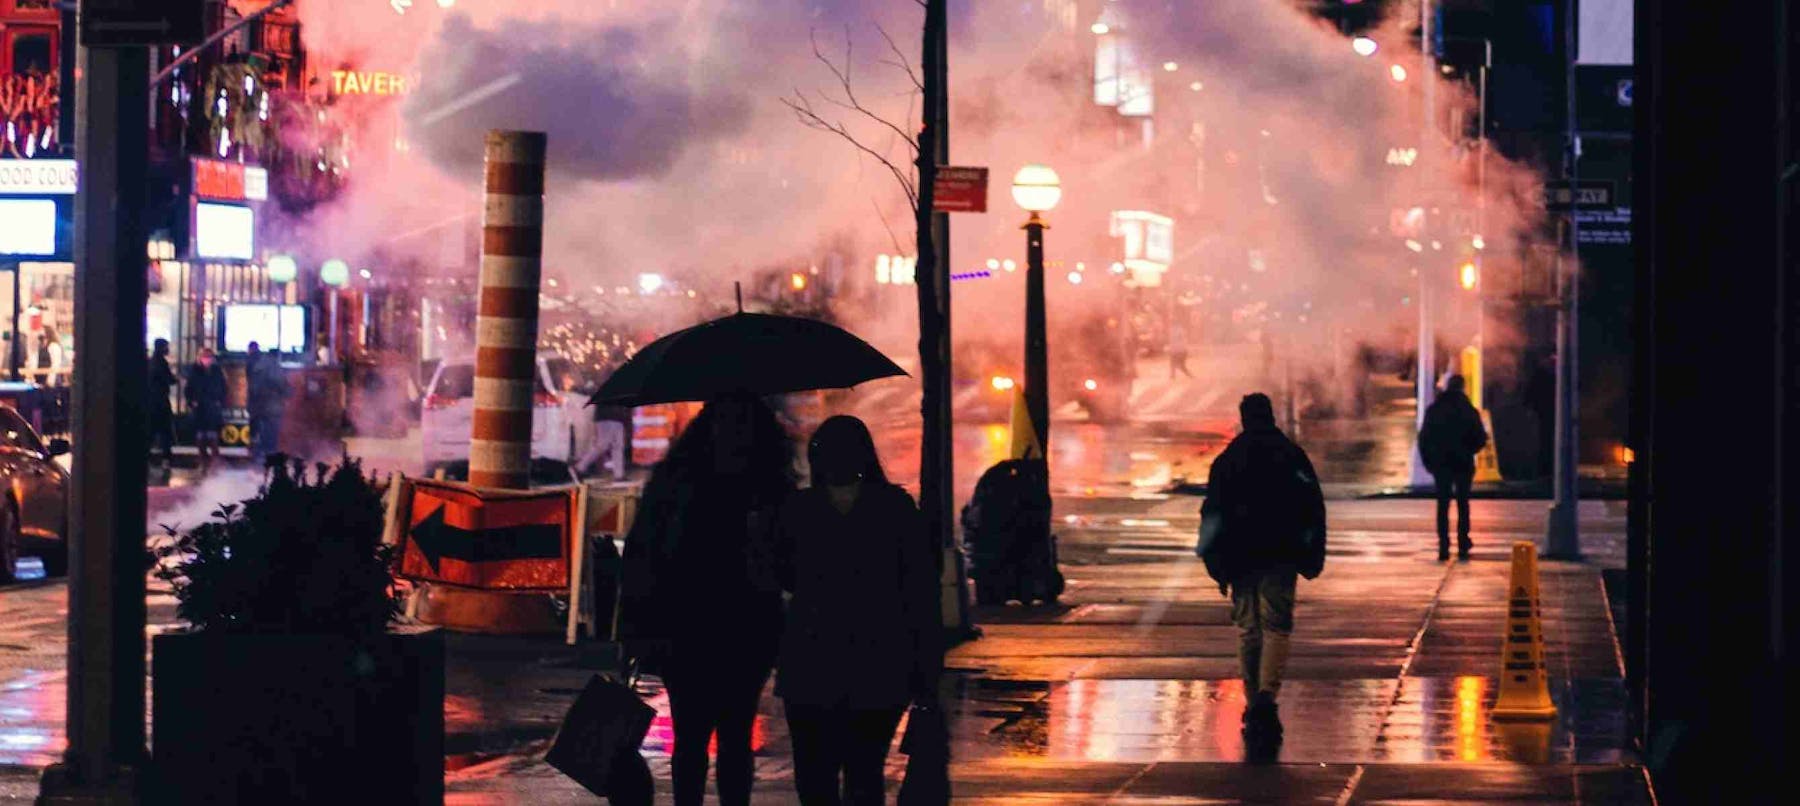 Nuage de fumée recouvrant une rue de la ville la nuit